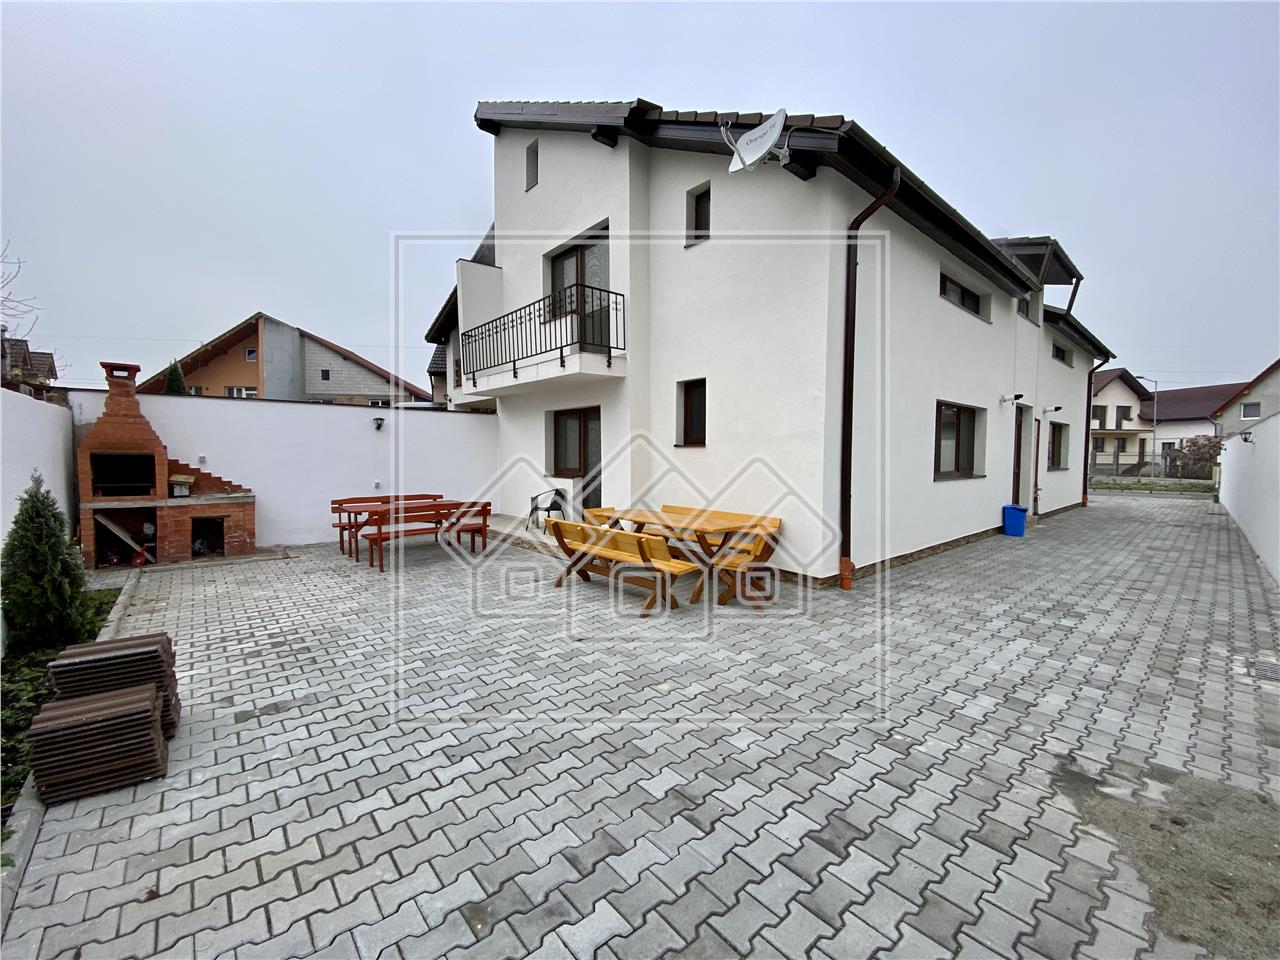 Casa de vanzare in Sibiu - 4 apartamente - prebabil regim hotelier